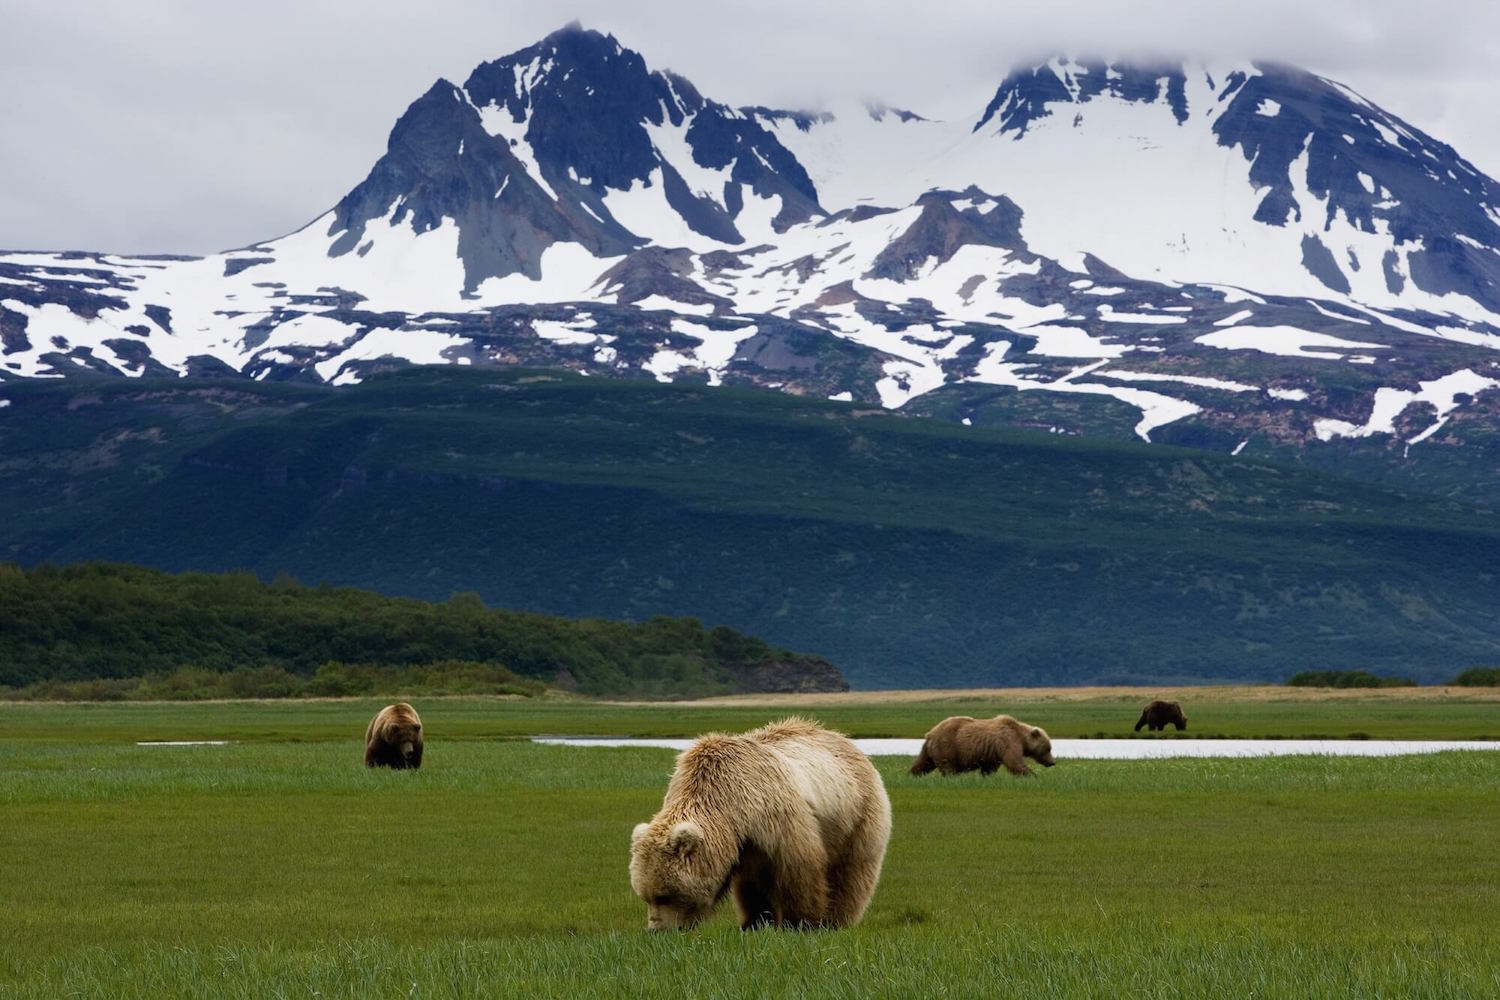 bears in a field in homer, alaska.